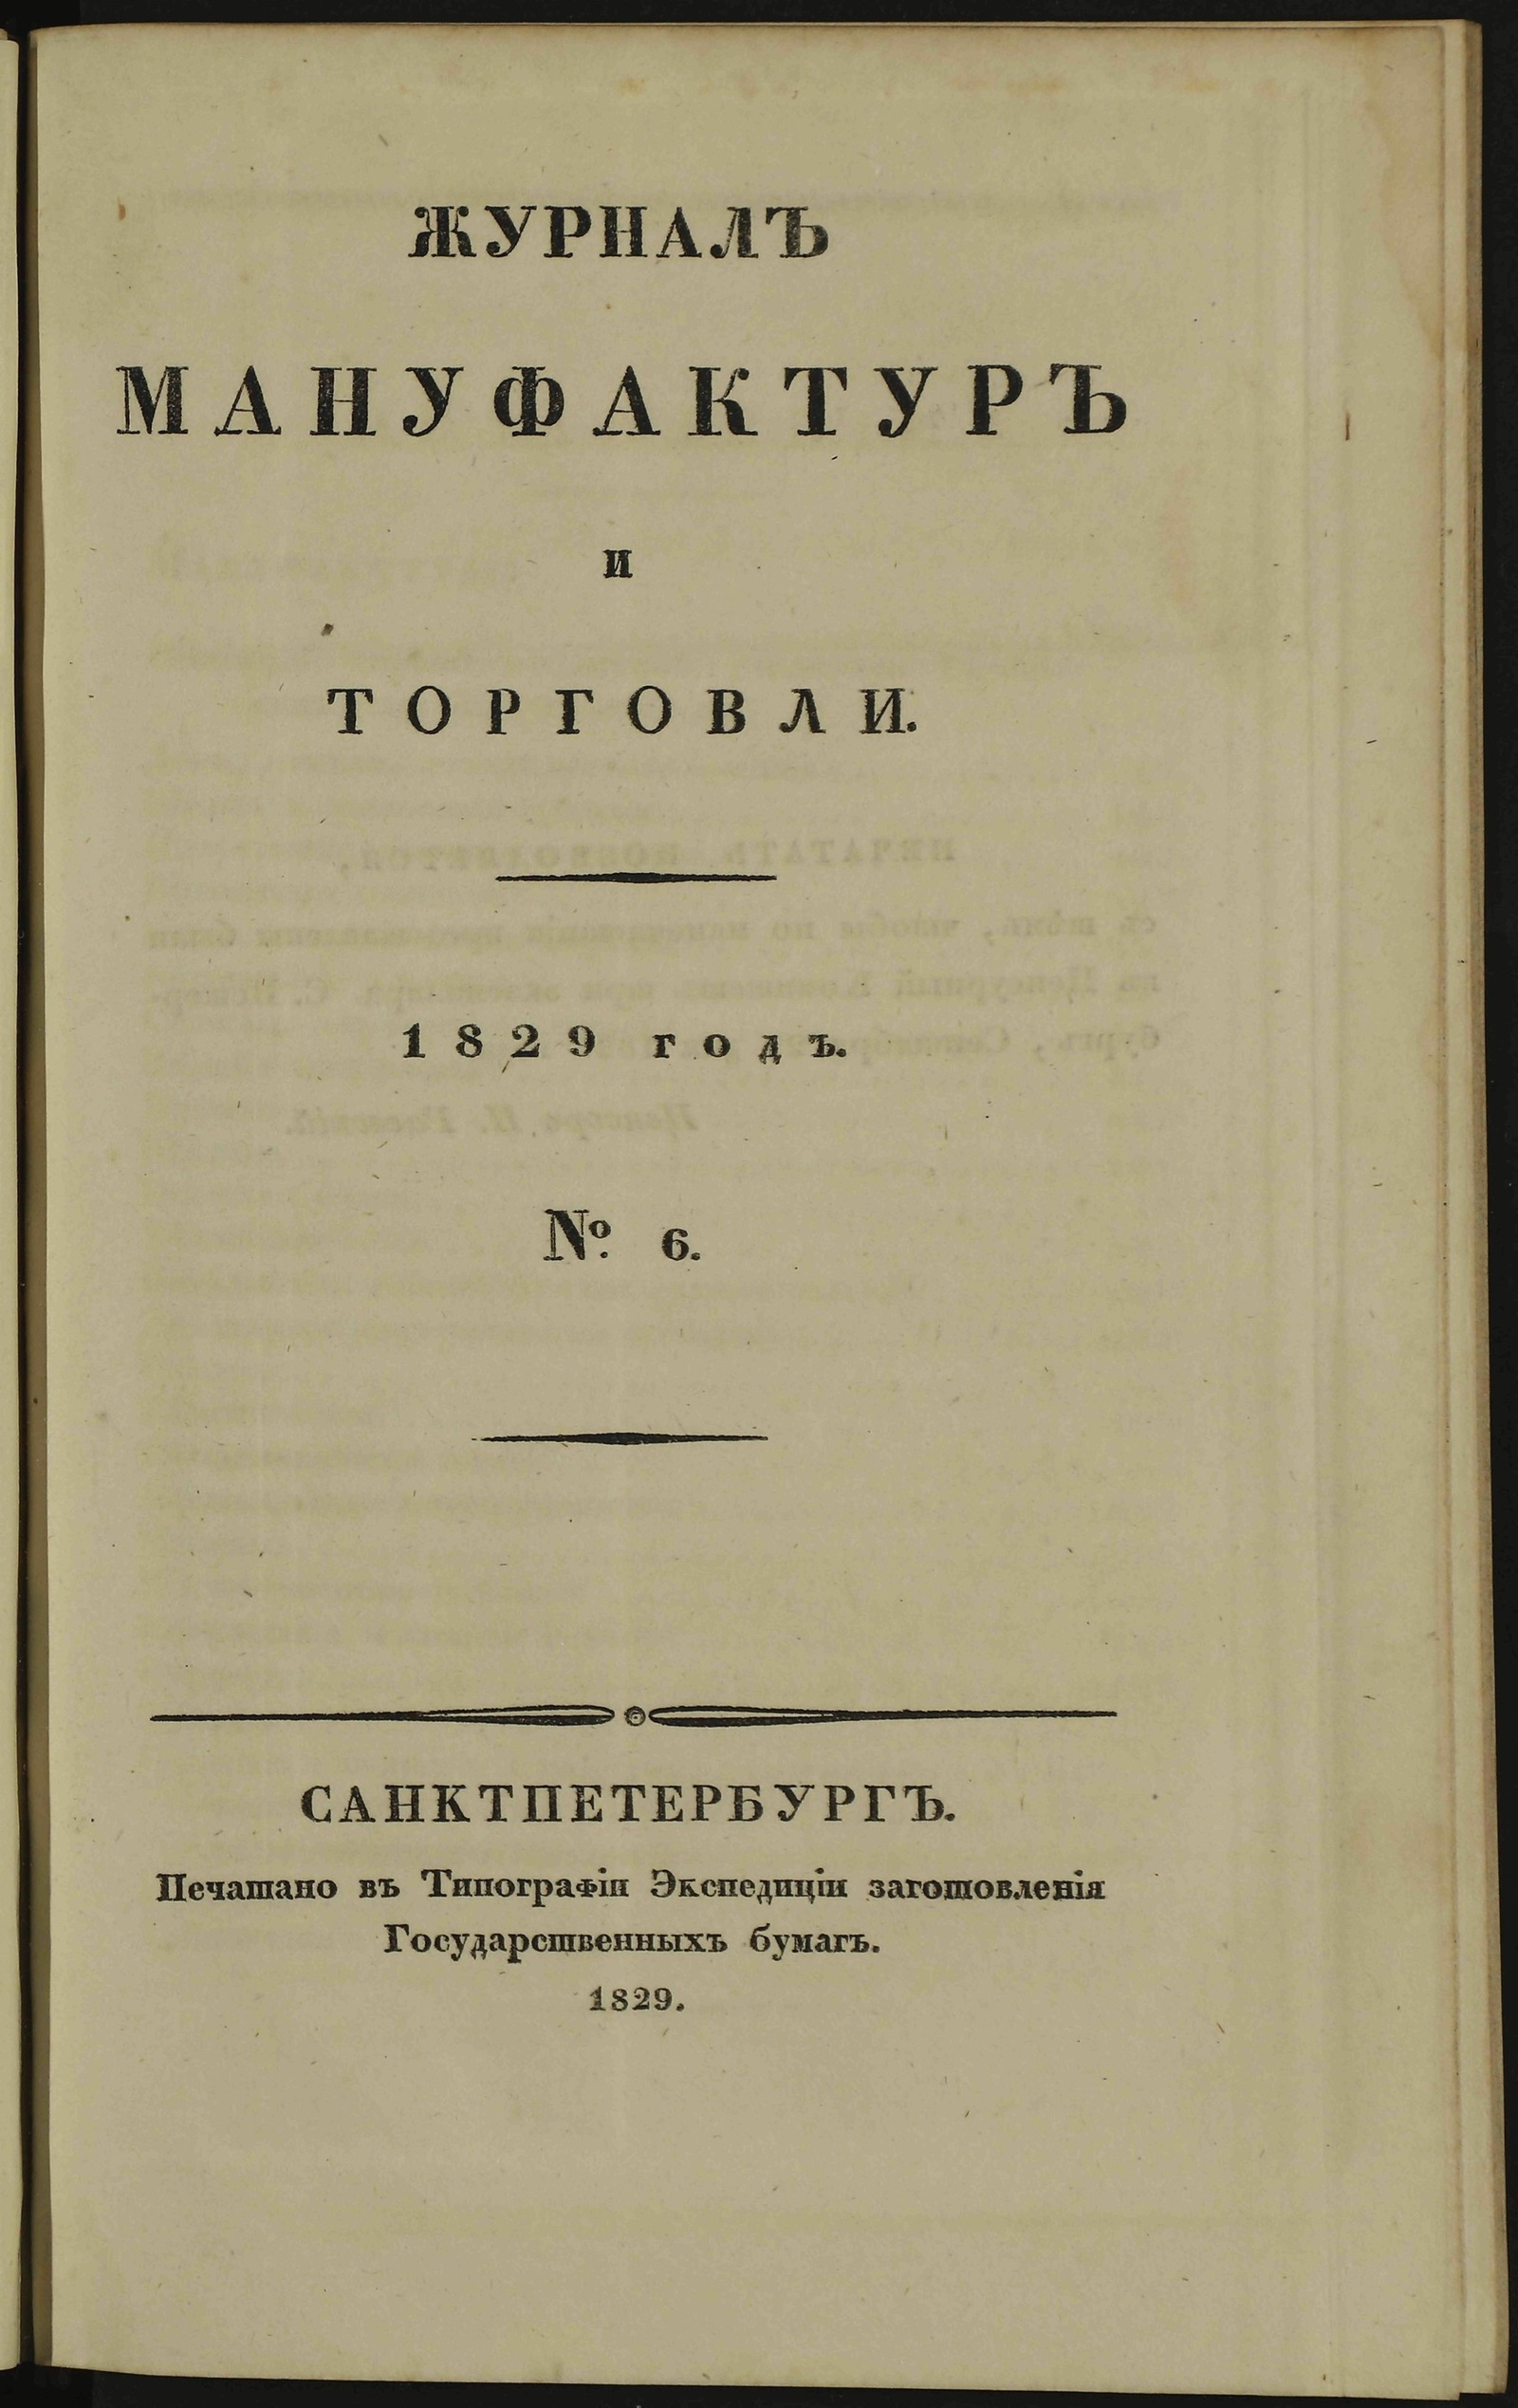 Изображение Журнал мануфактур и торговли. 1829 год. № 6